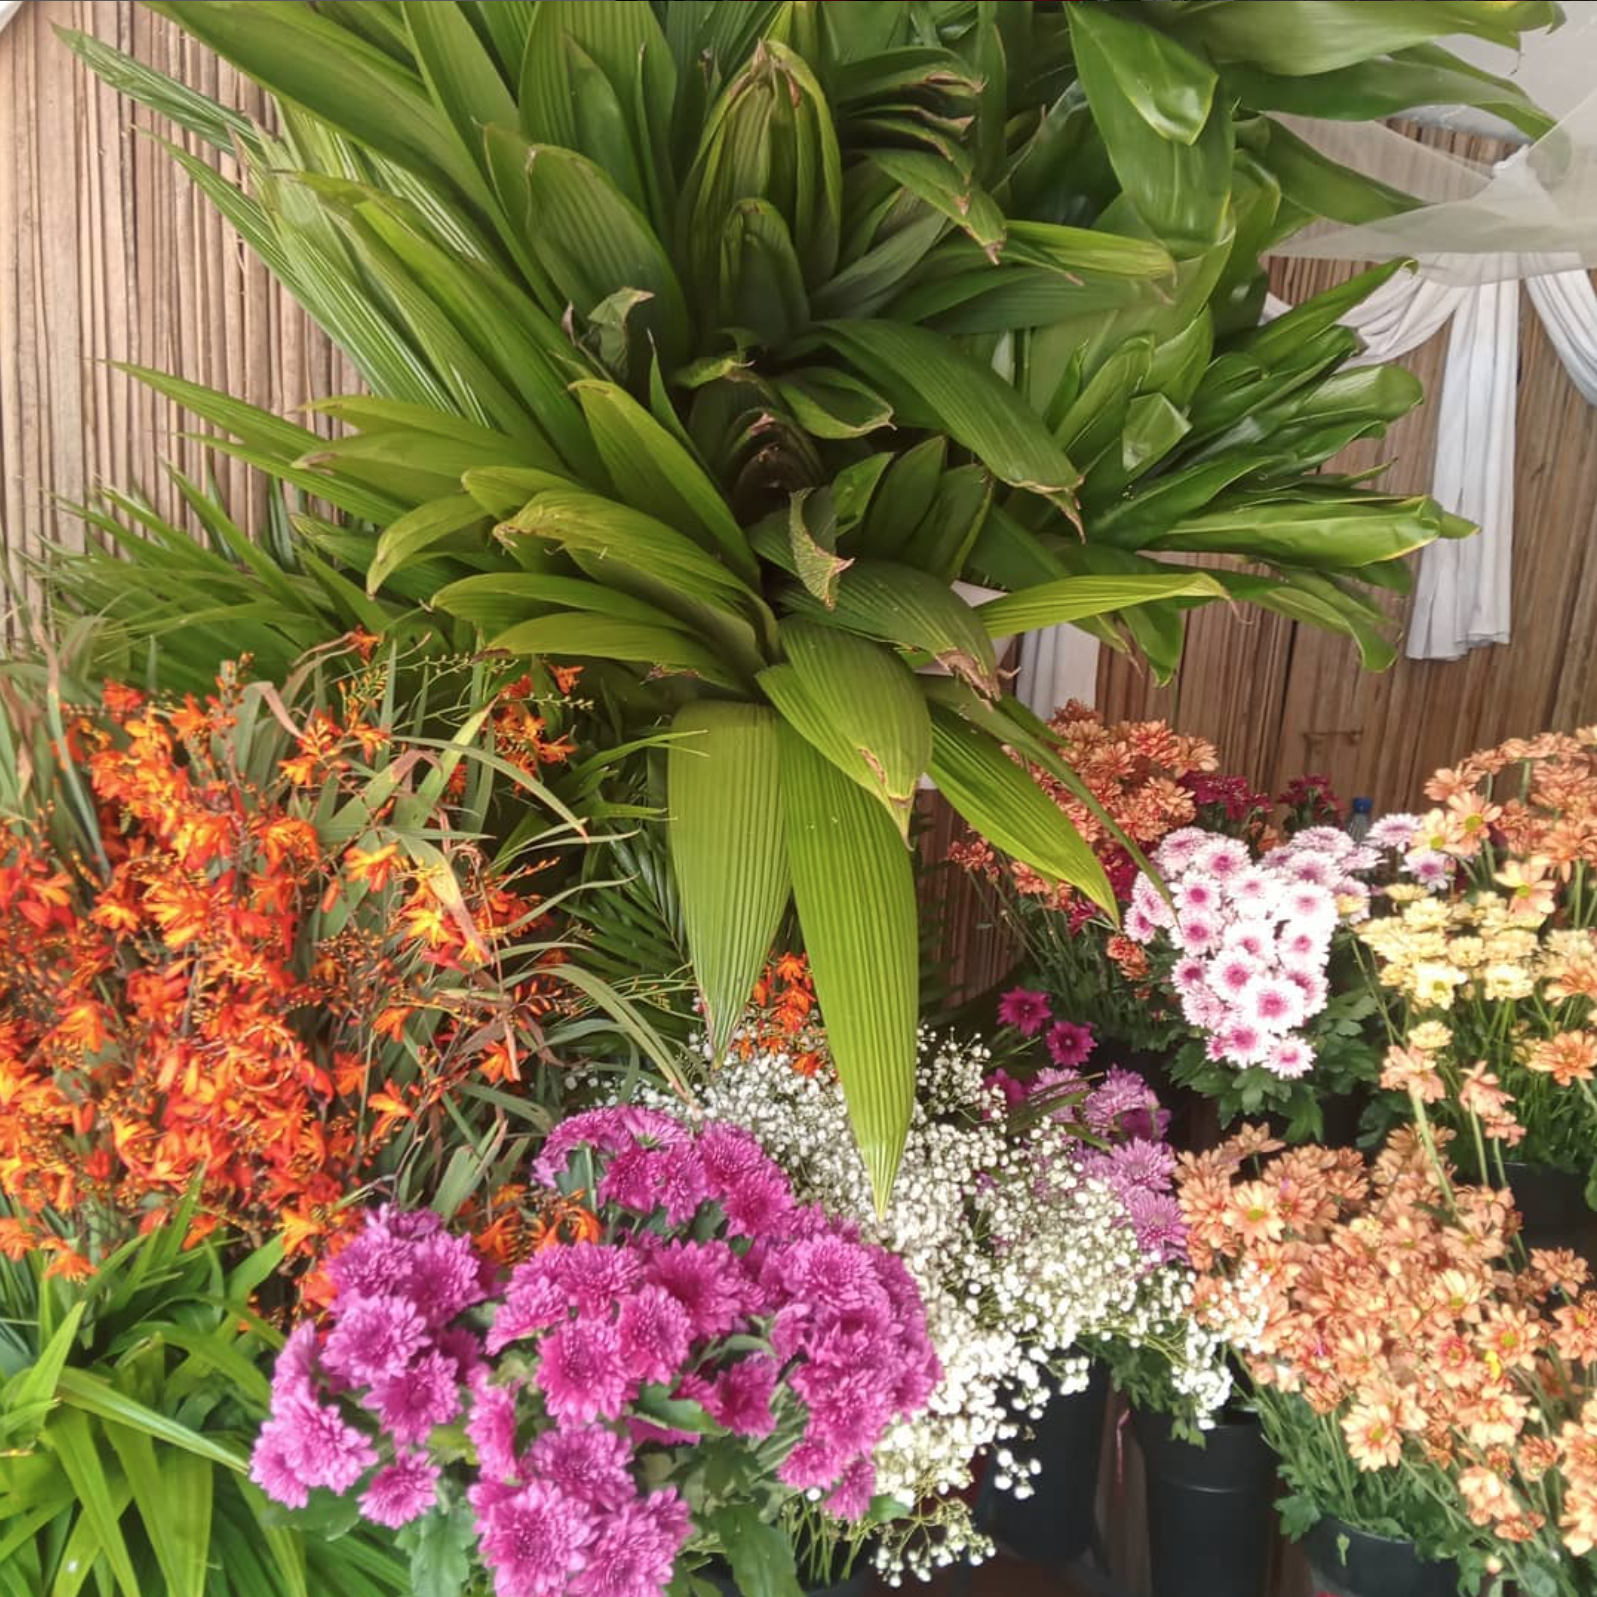 Des fleurs magnifiques que nous aimons : Voici les meilleurs fleuristes en ligne de l'île Maurice pour des fleurs magnifiques, des bouquets personnalisés et des services de livraison.